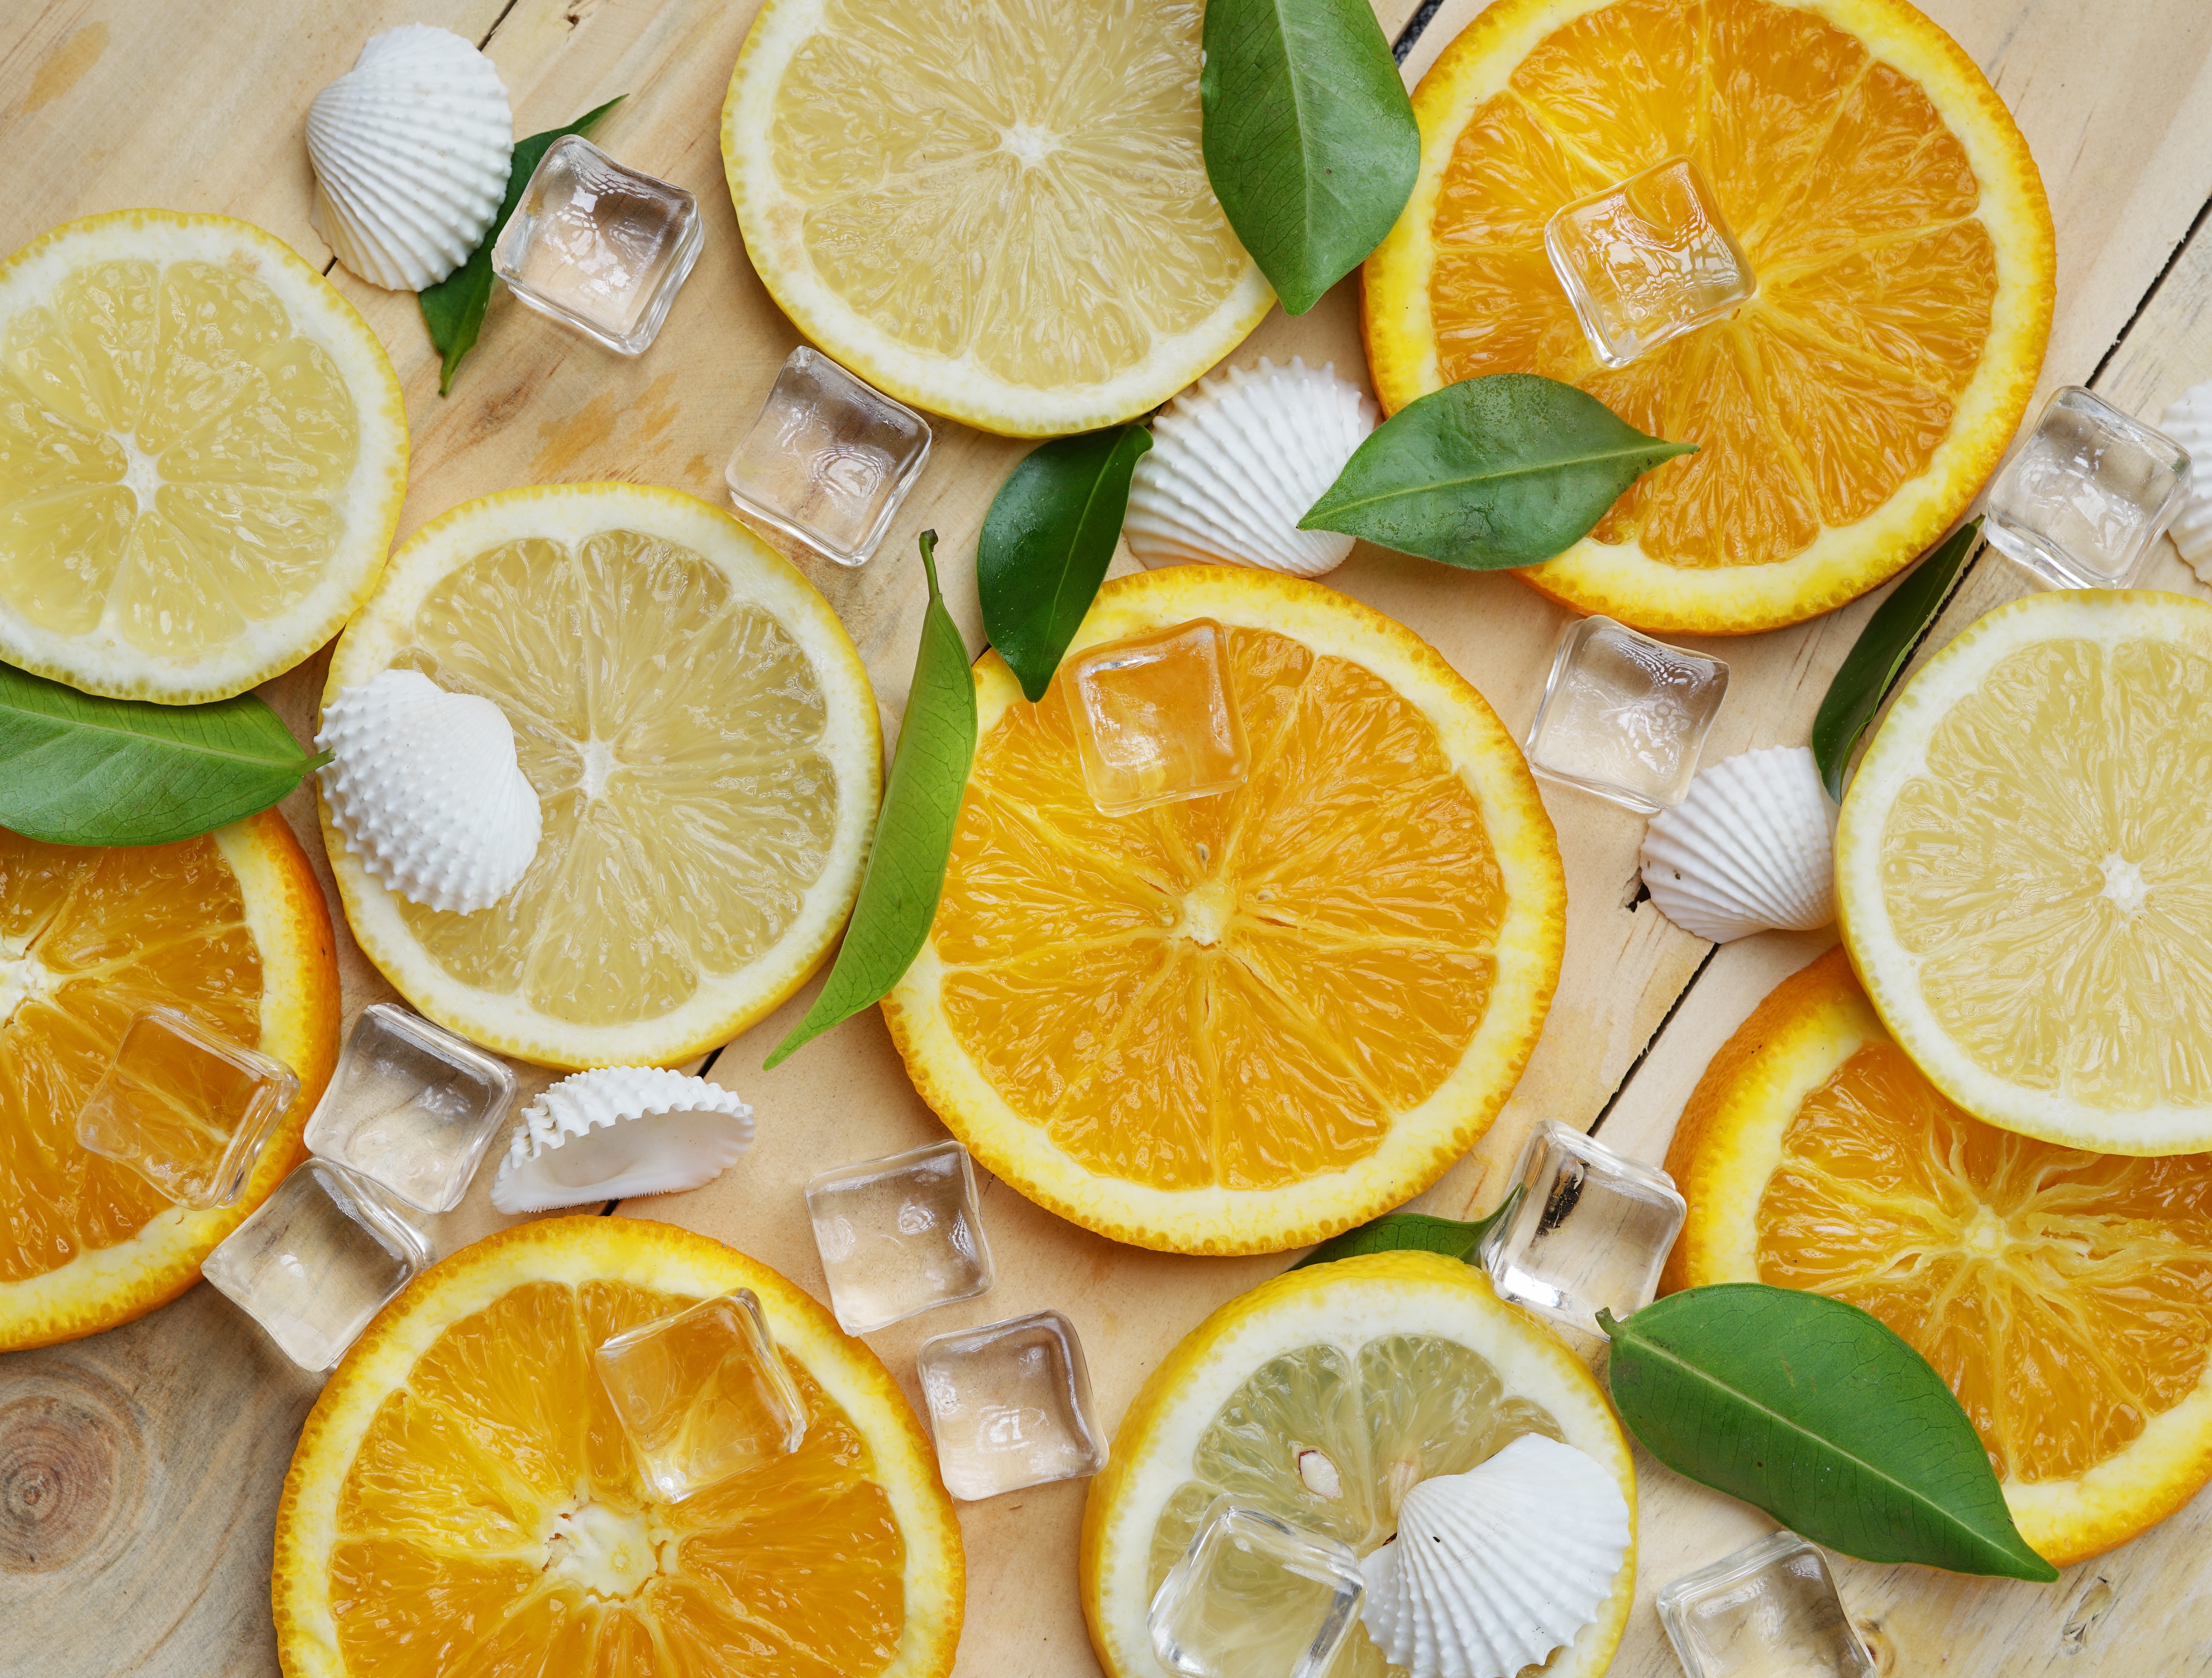 Image: Lemon, orange, slices, ice, shells